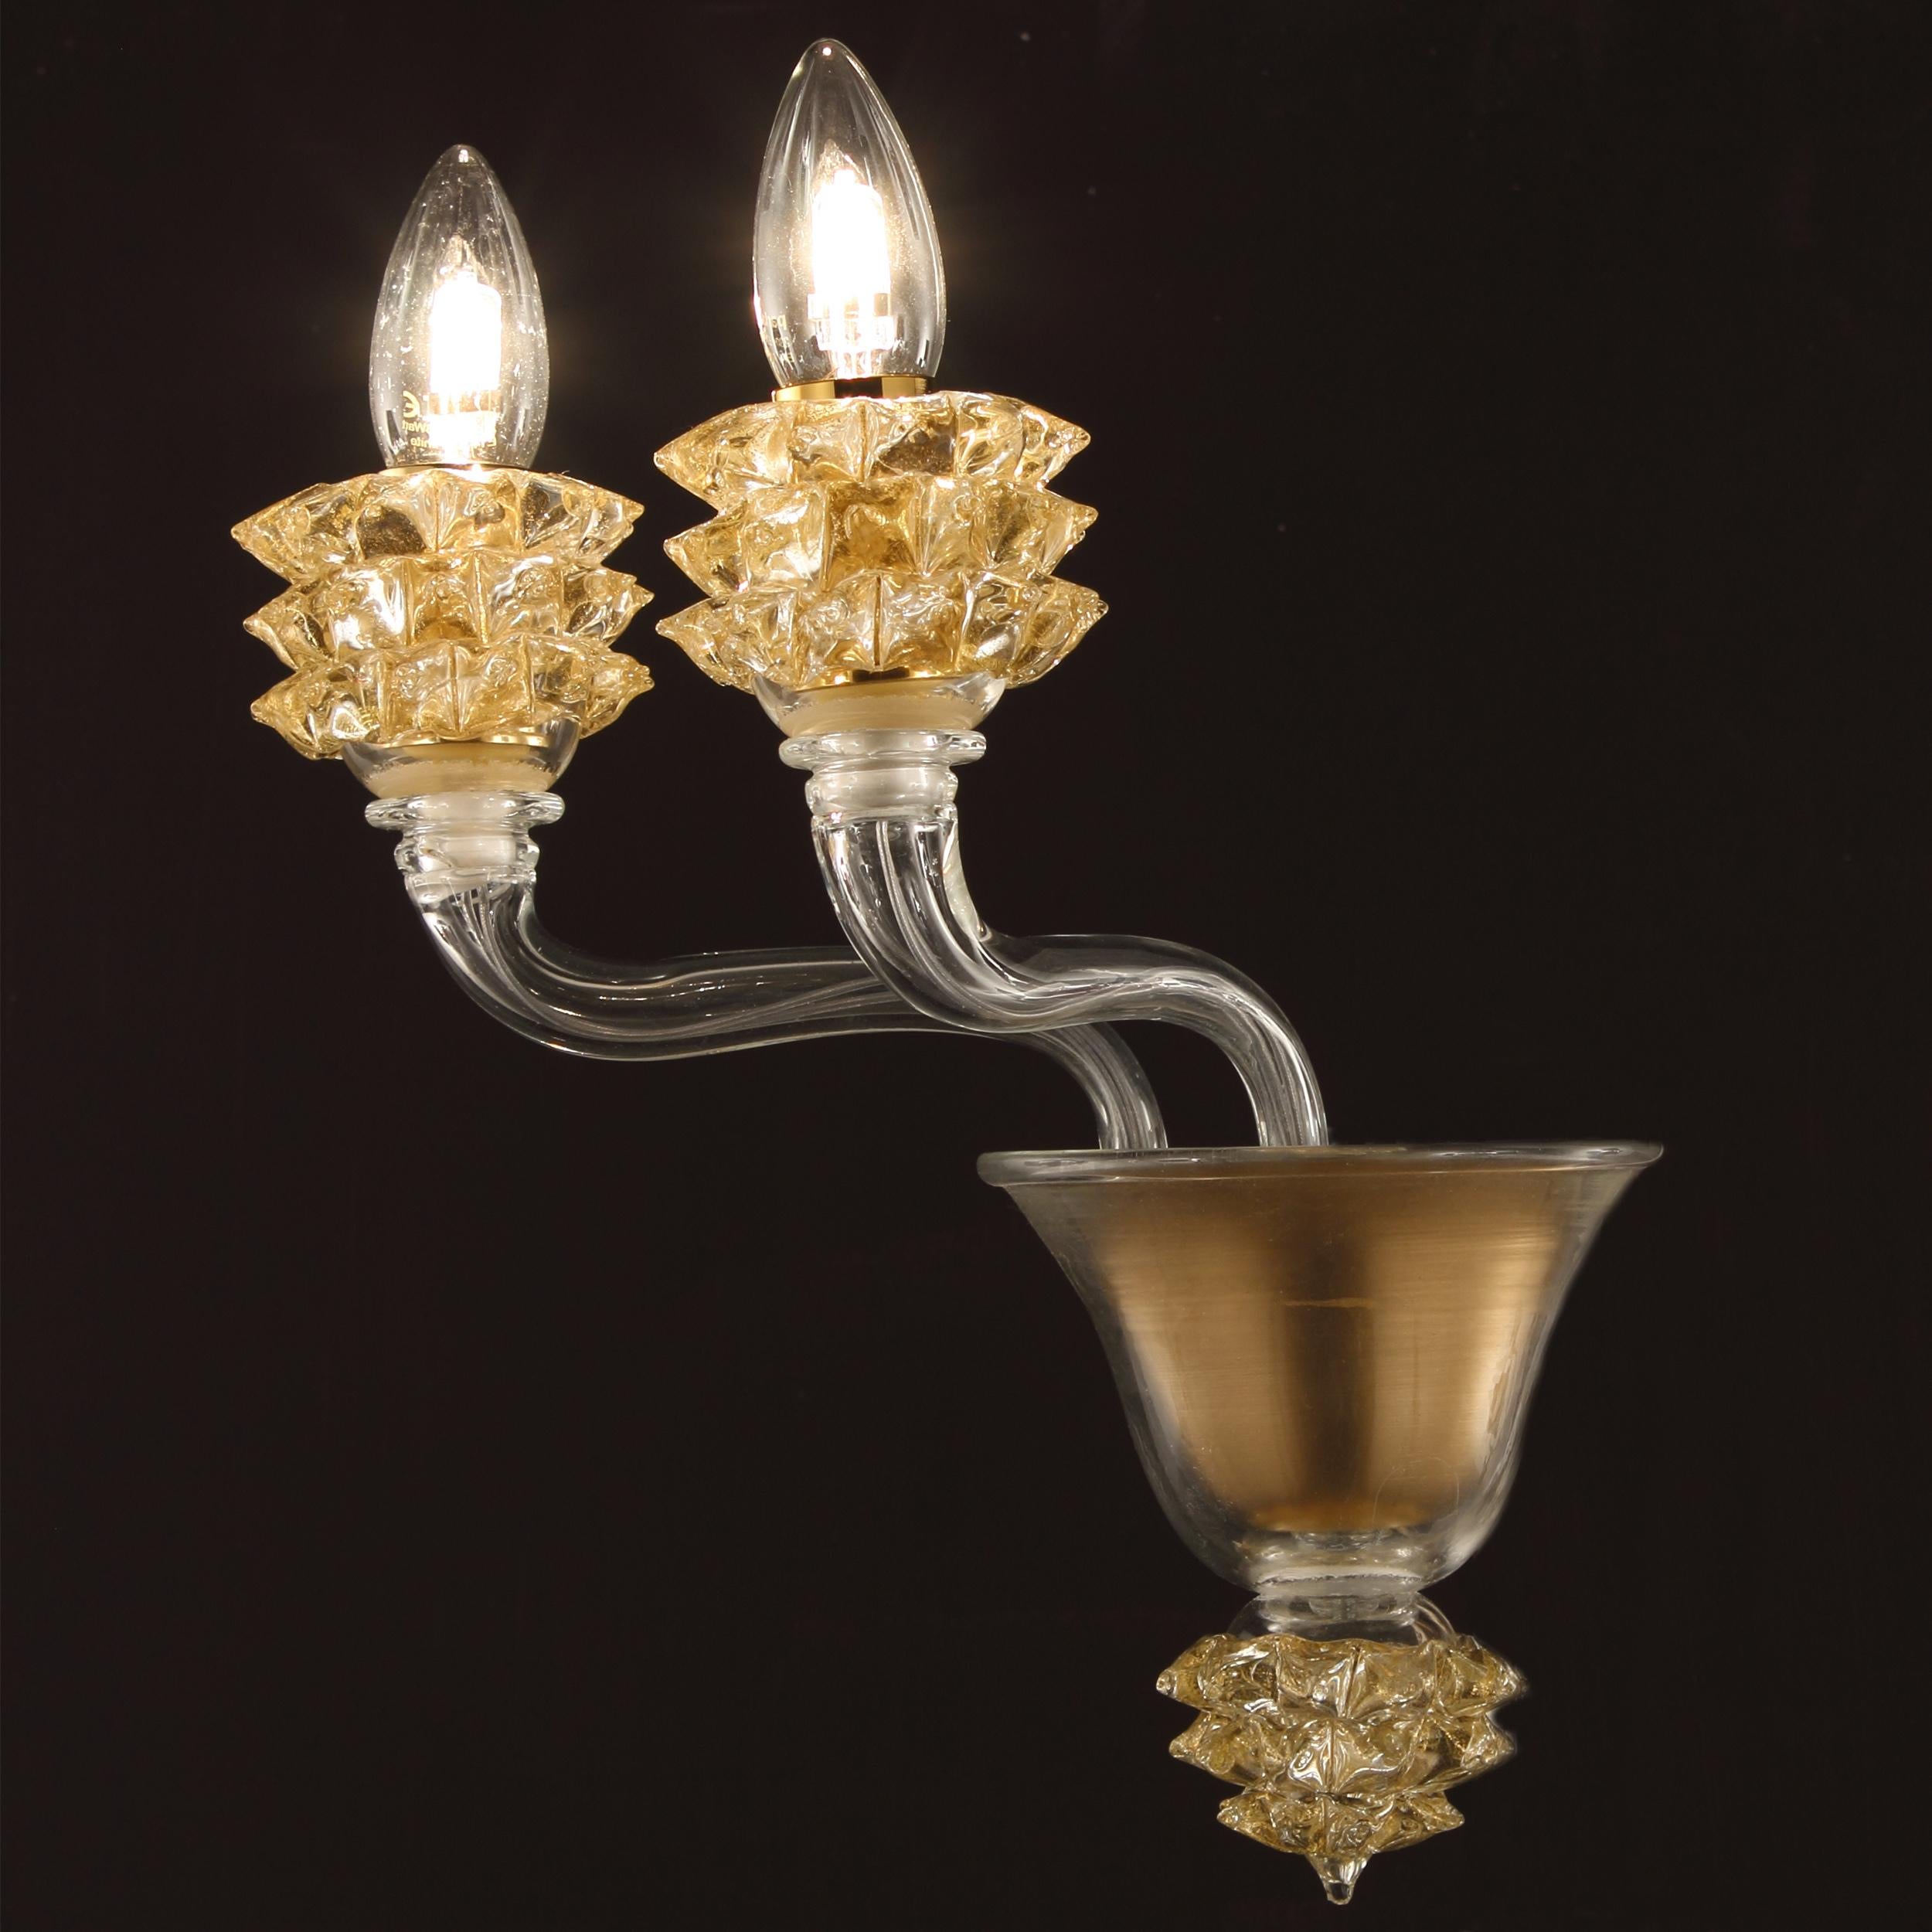 Die 2-armige Leuchte Diamante aus klarem Murano-Glas mit goldenen Details ist ein wohlproportioniertes Produkt.
Das Glas der Arme ist glatt. Das Besondere an dieser Leuchte sind die Schalen, die in einem komplexen Herstellungsverfahren, dem so